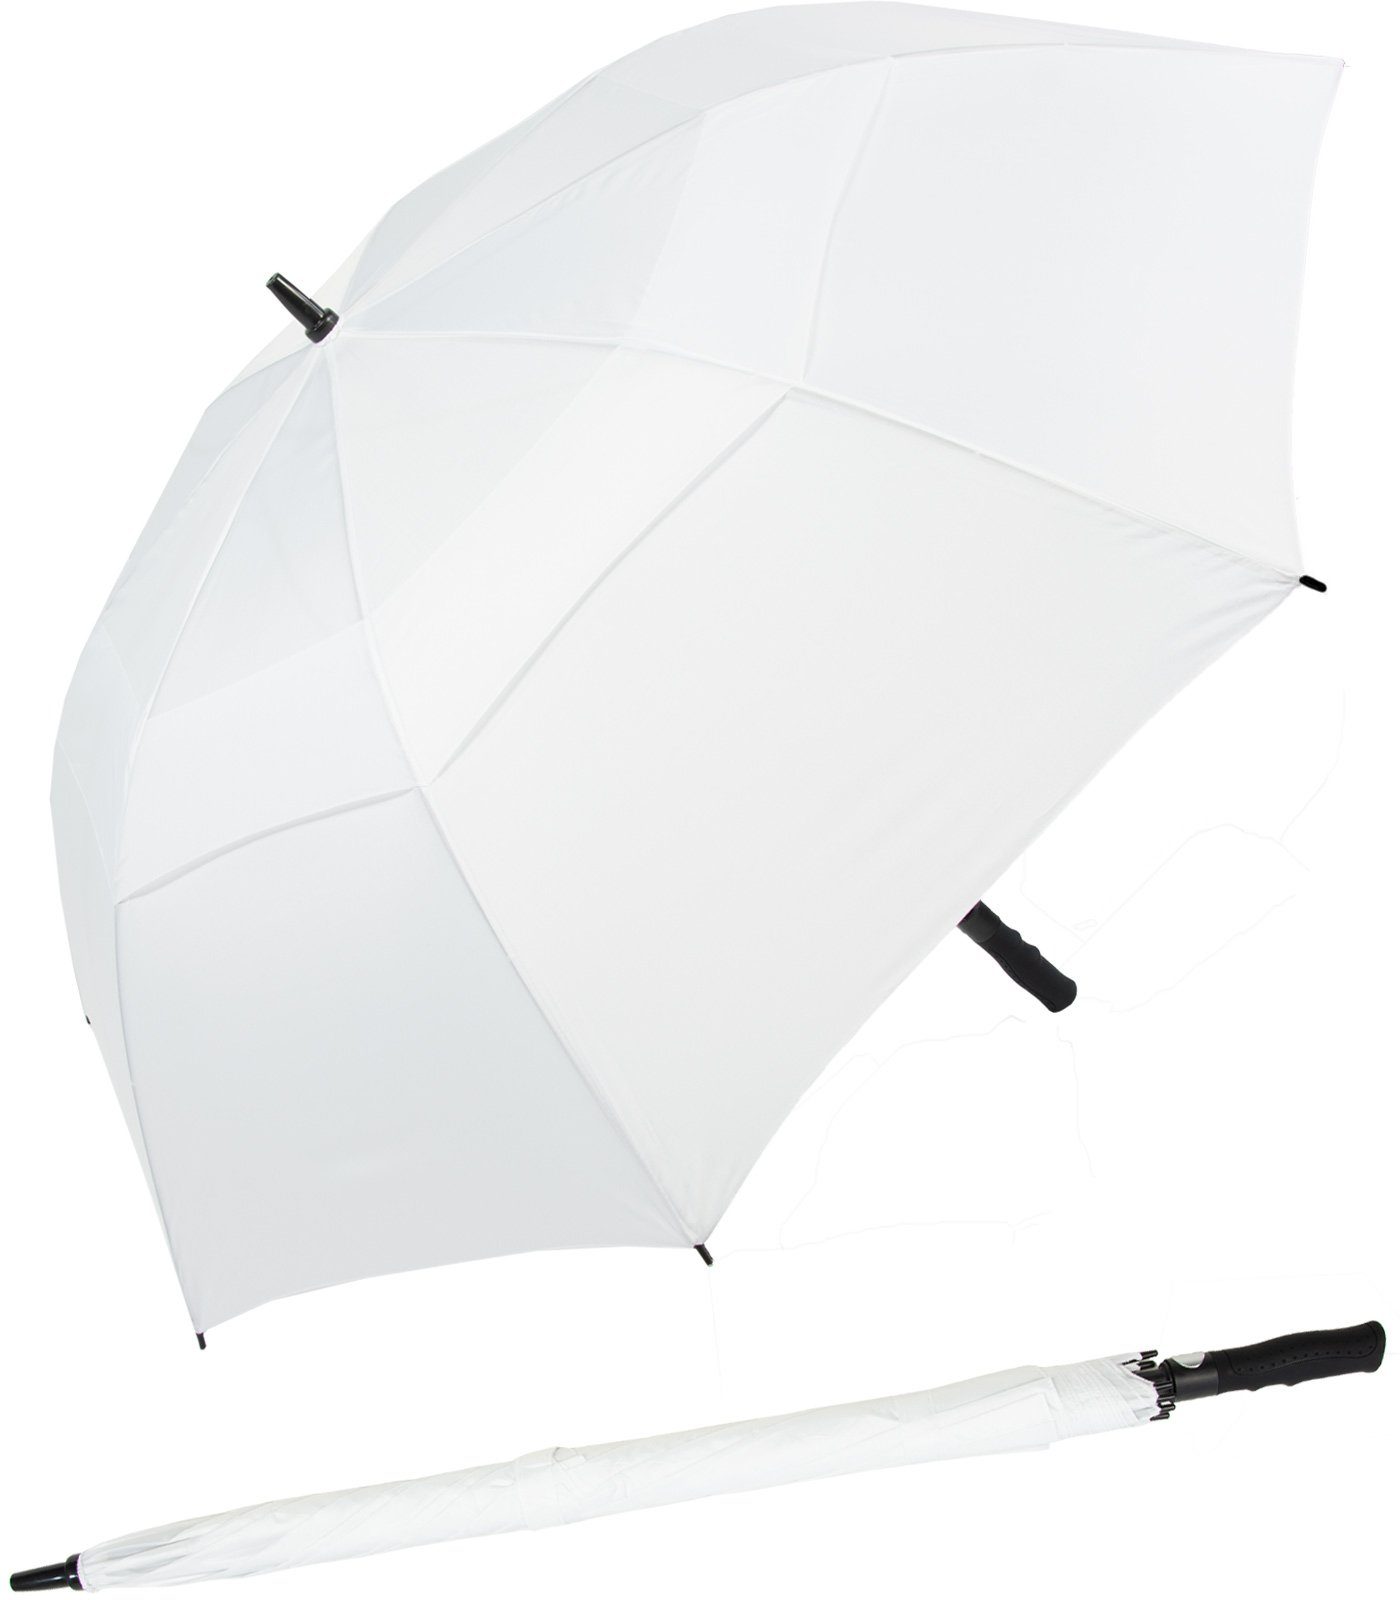 Impliva Langregenschirm Falcone® XXL Golfschirm mit Glasfibergestell, innovatives Design mit Auf-Automatik weiß